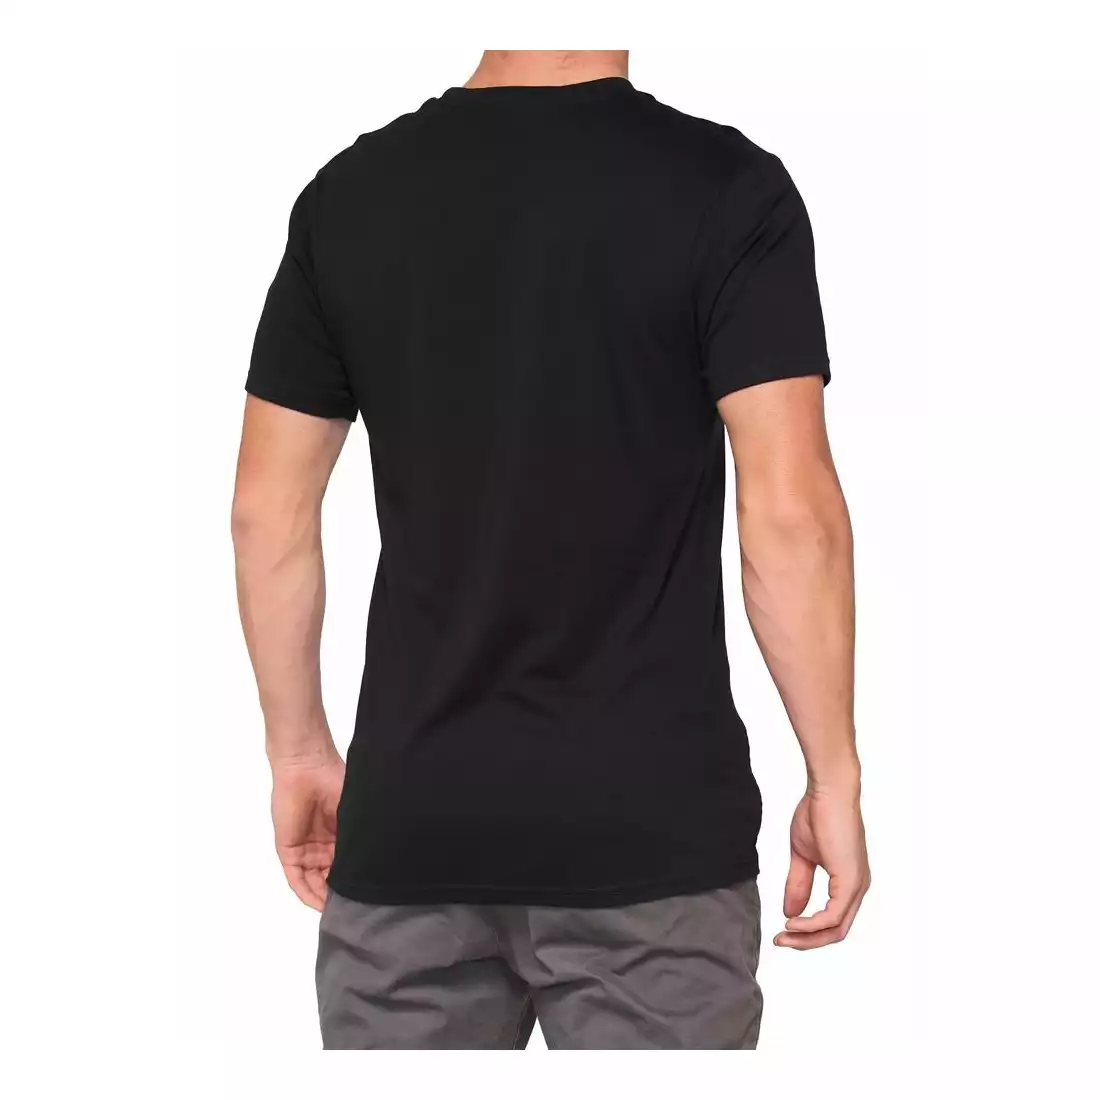 100% koszulka sportowa męska z krótkim rękawem ESSENTIAL black snake STO-32016-462-13